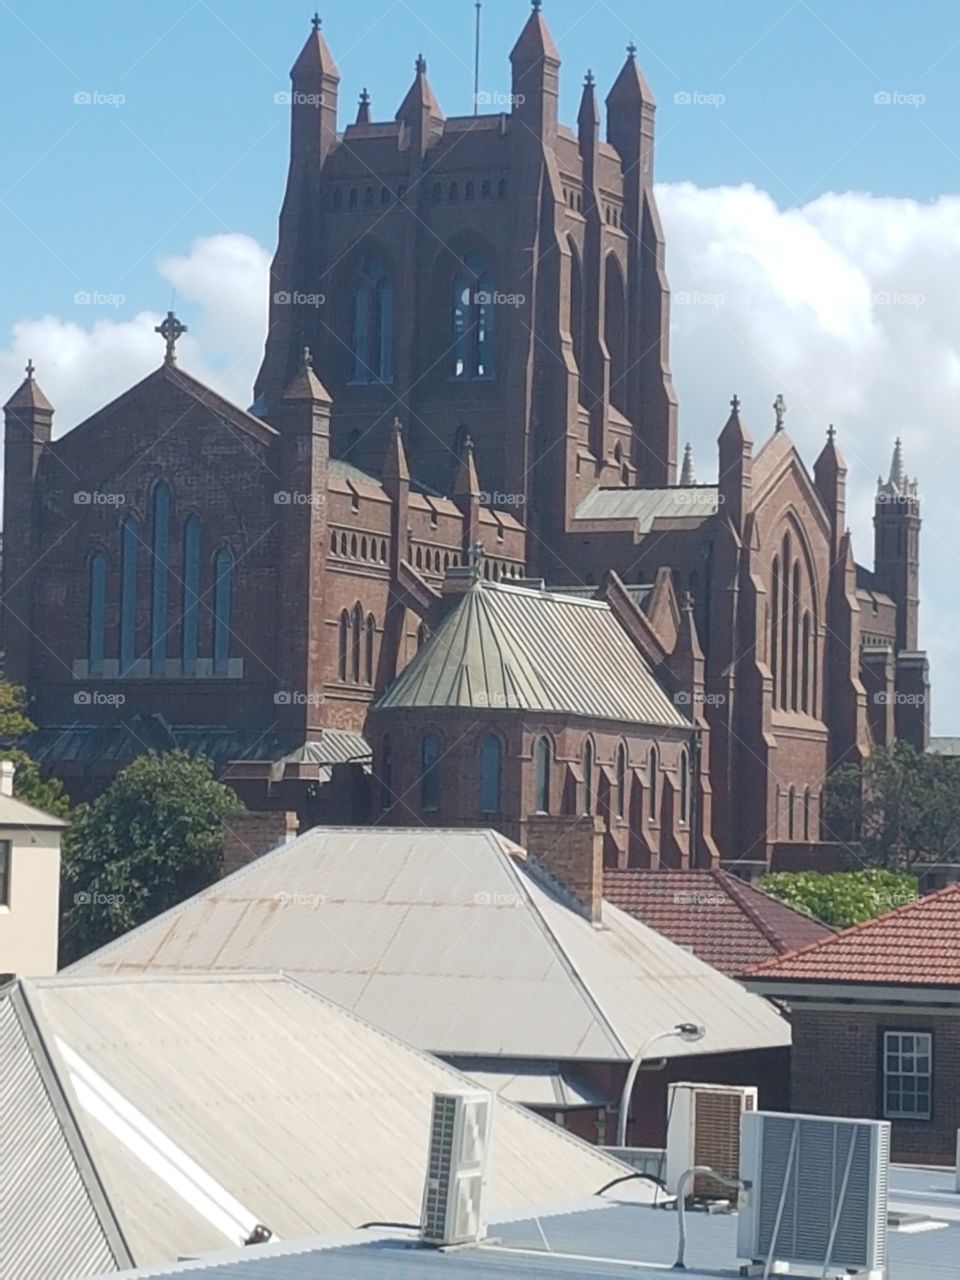 Beautiful architecture Newcastle